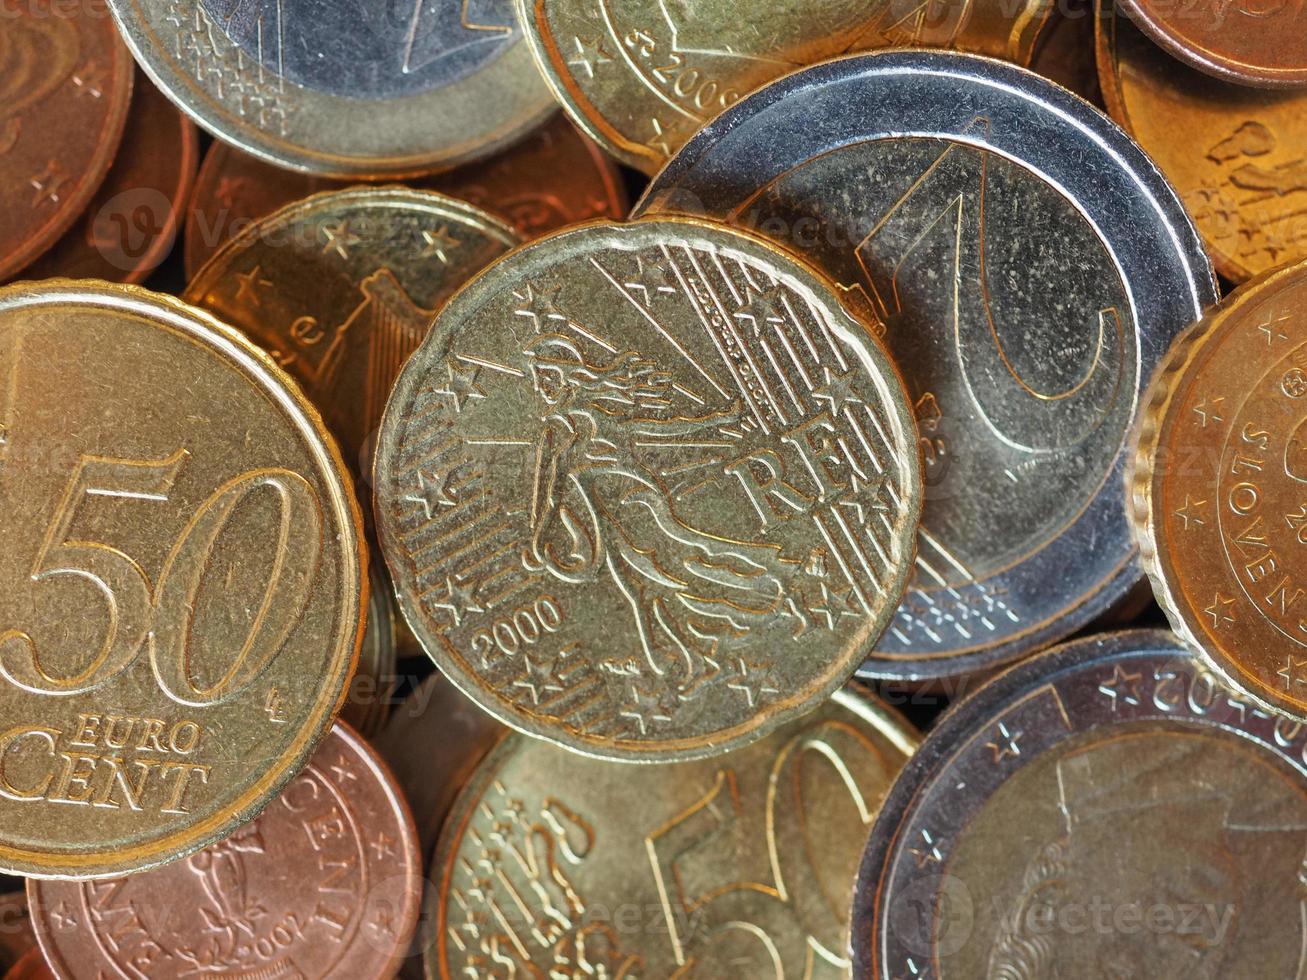 euromunten, achtergrond van de europese unie foto